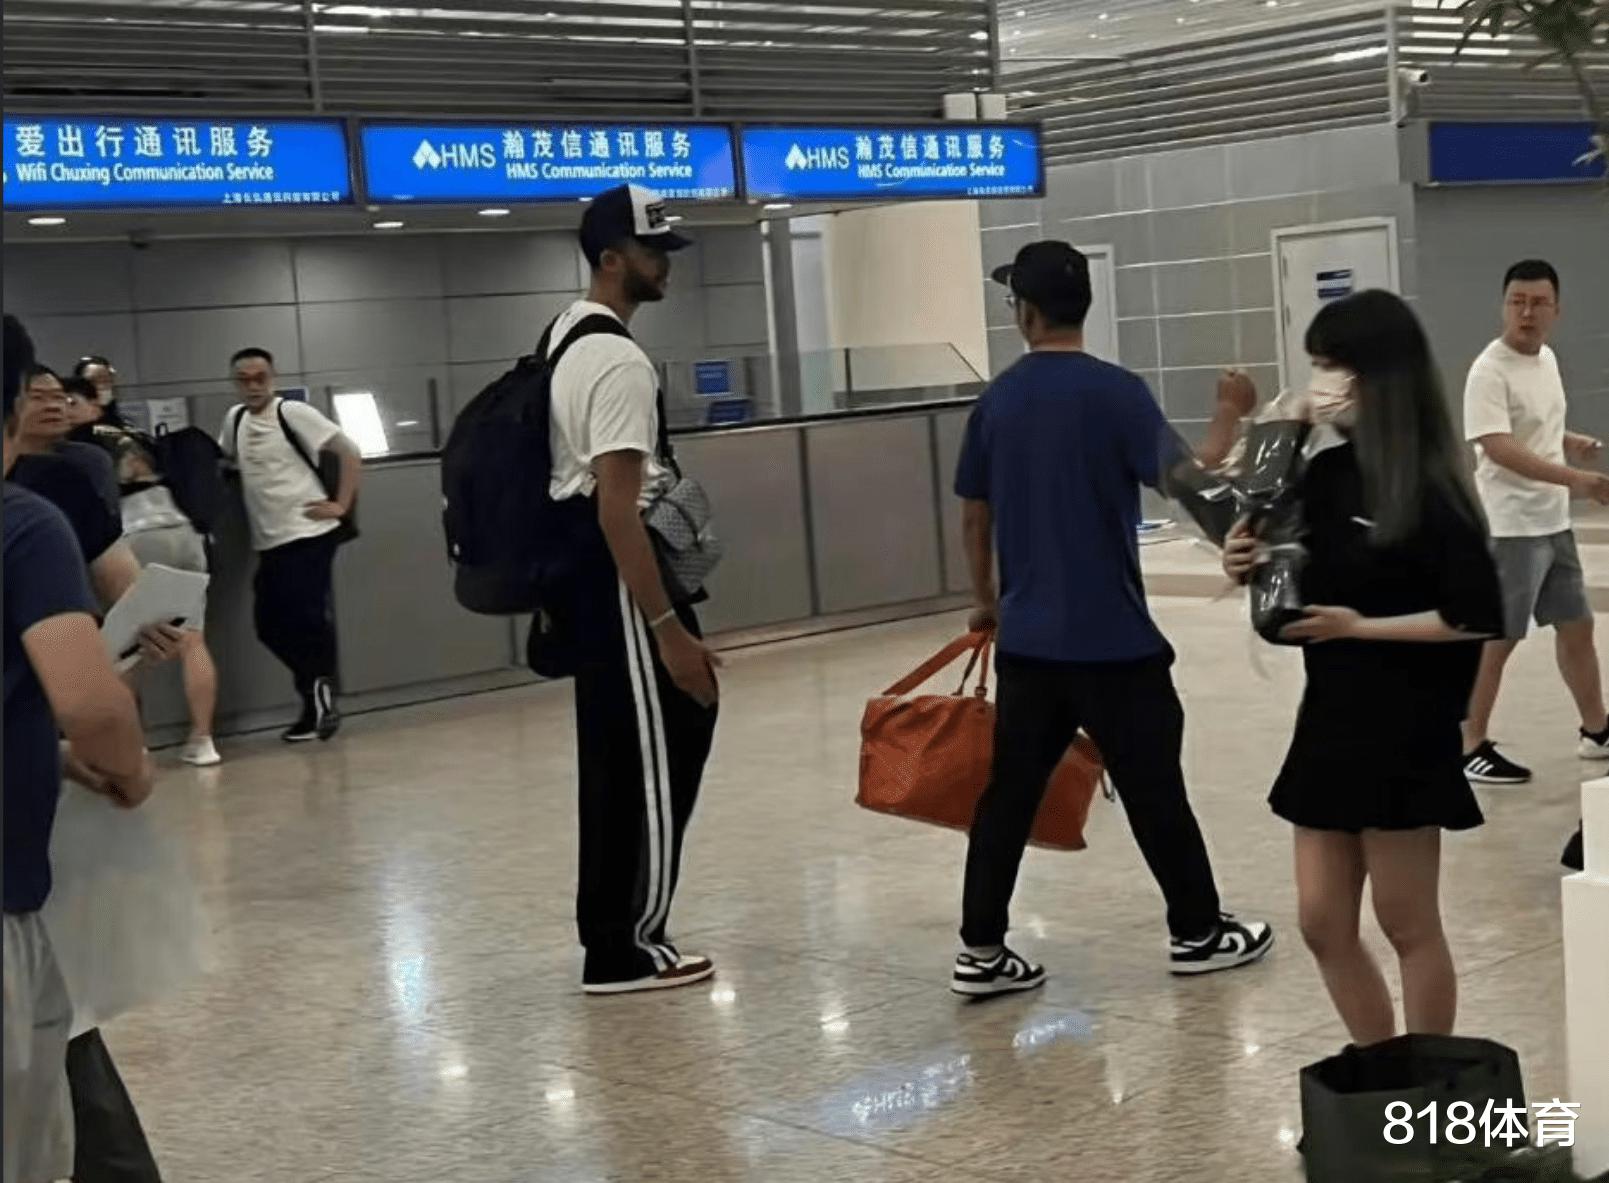 他来了! 李凯尔抵达上海浦东机场, 经纪人婉拒球迷签名要求迅速撤离(5)